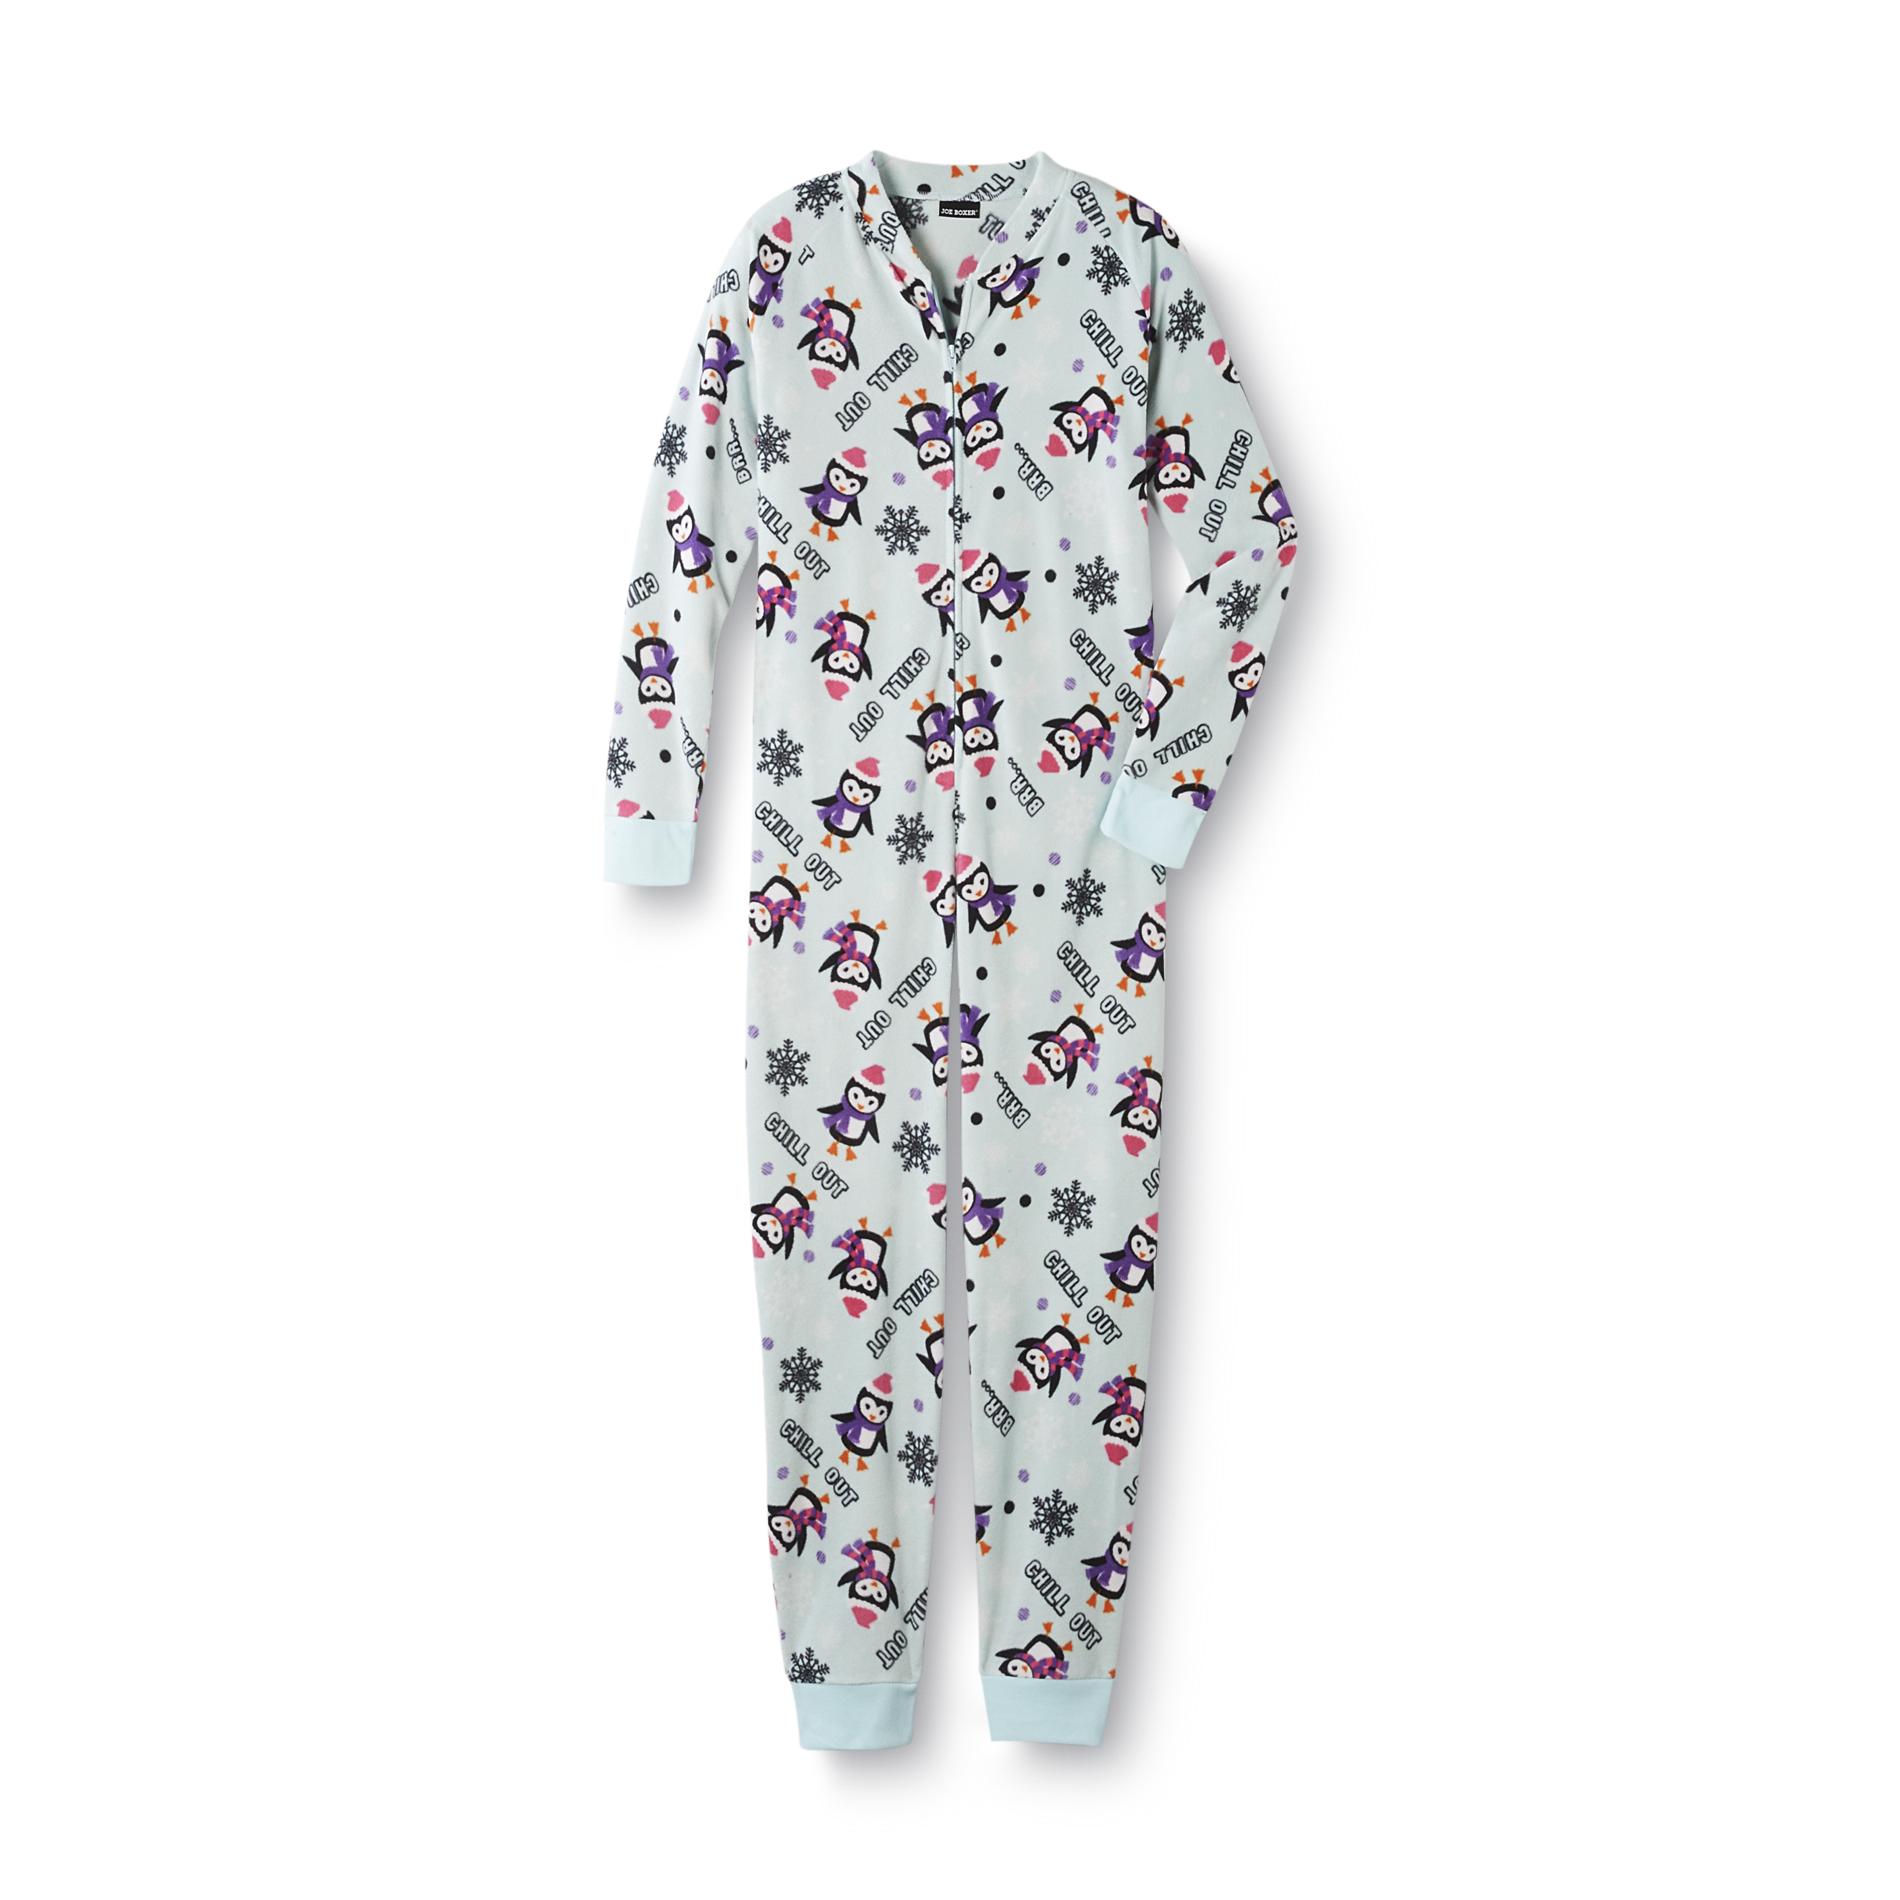 Joe Boxer Women's One-Piece Pajamas - Penguins